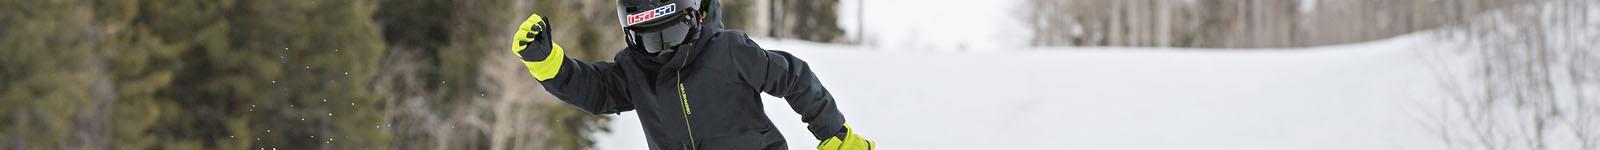 Patagonia Kids Ski/Snowboard & Winter Gloves/Mittens 